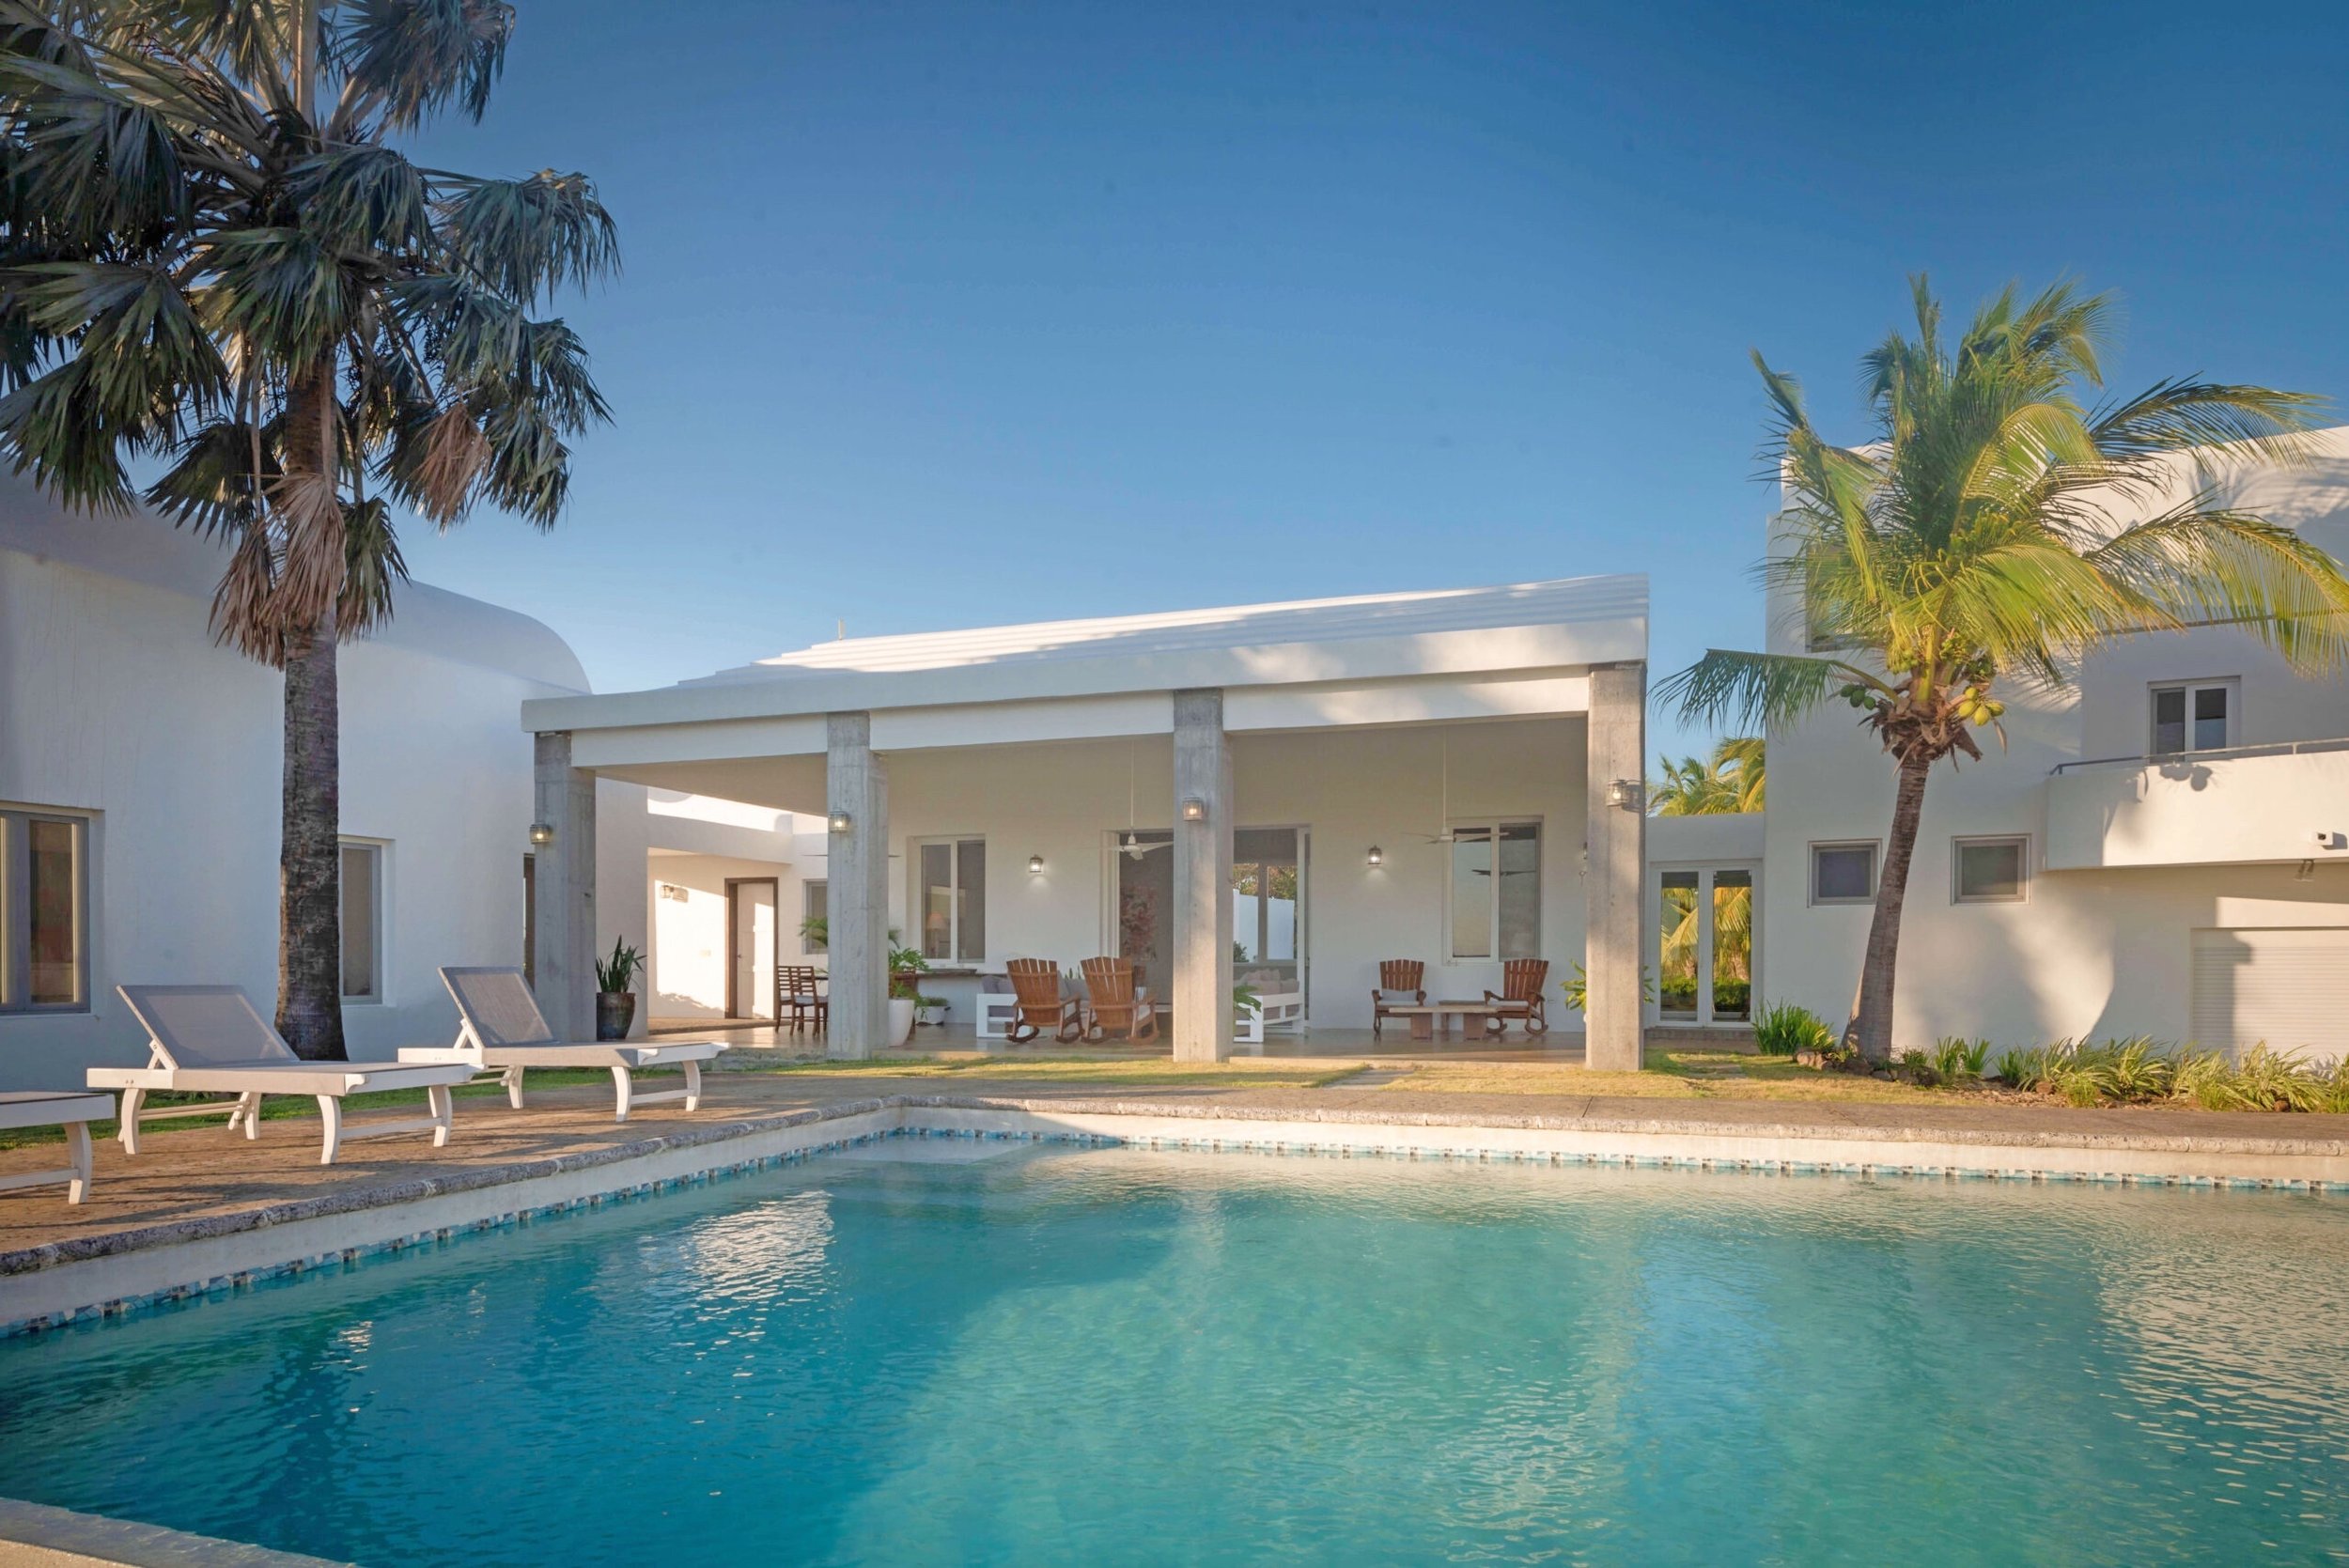 Luxury Home For Sale San Juan Del Sur Nicaragua Real Estate Property 12.jpg